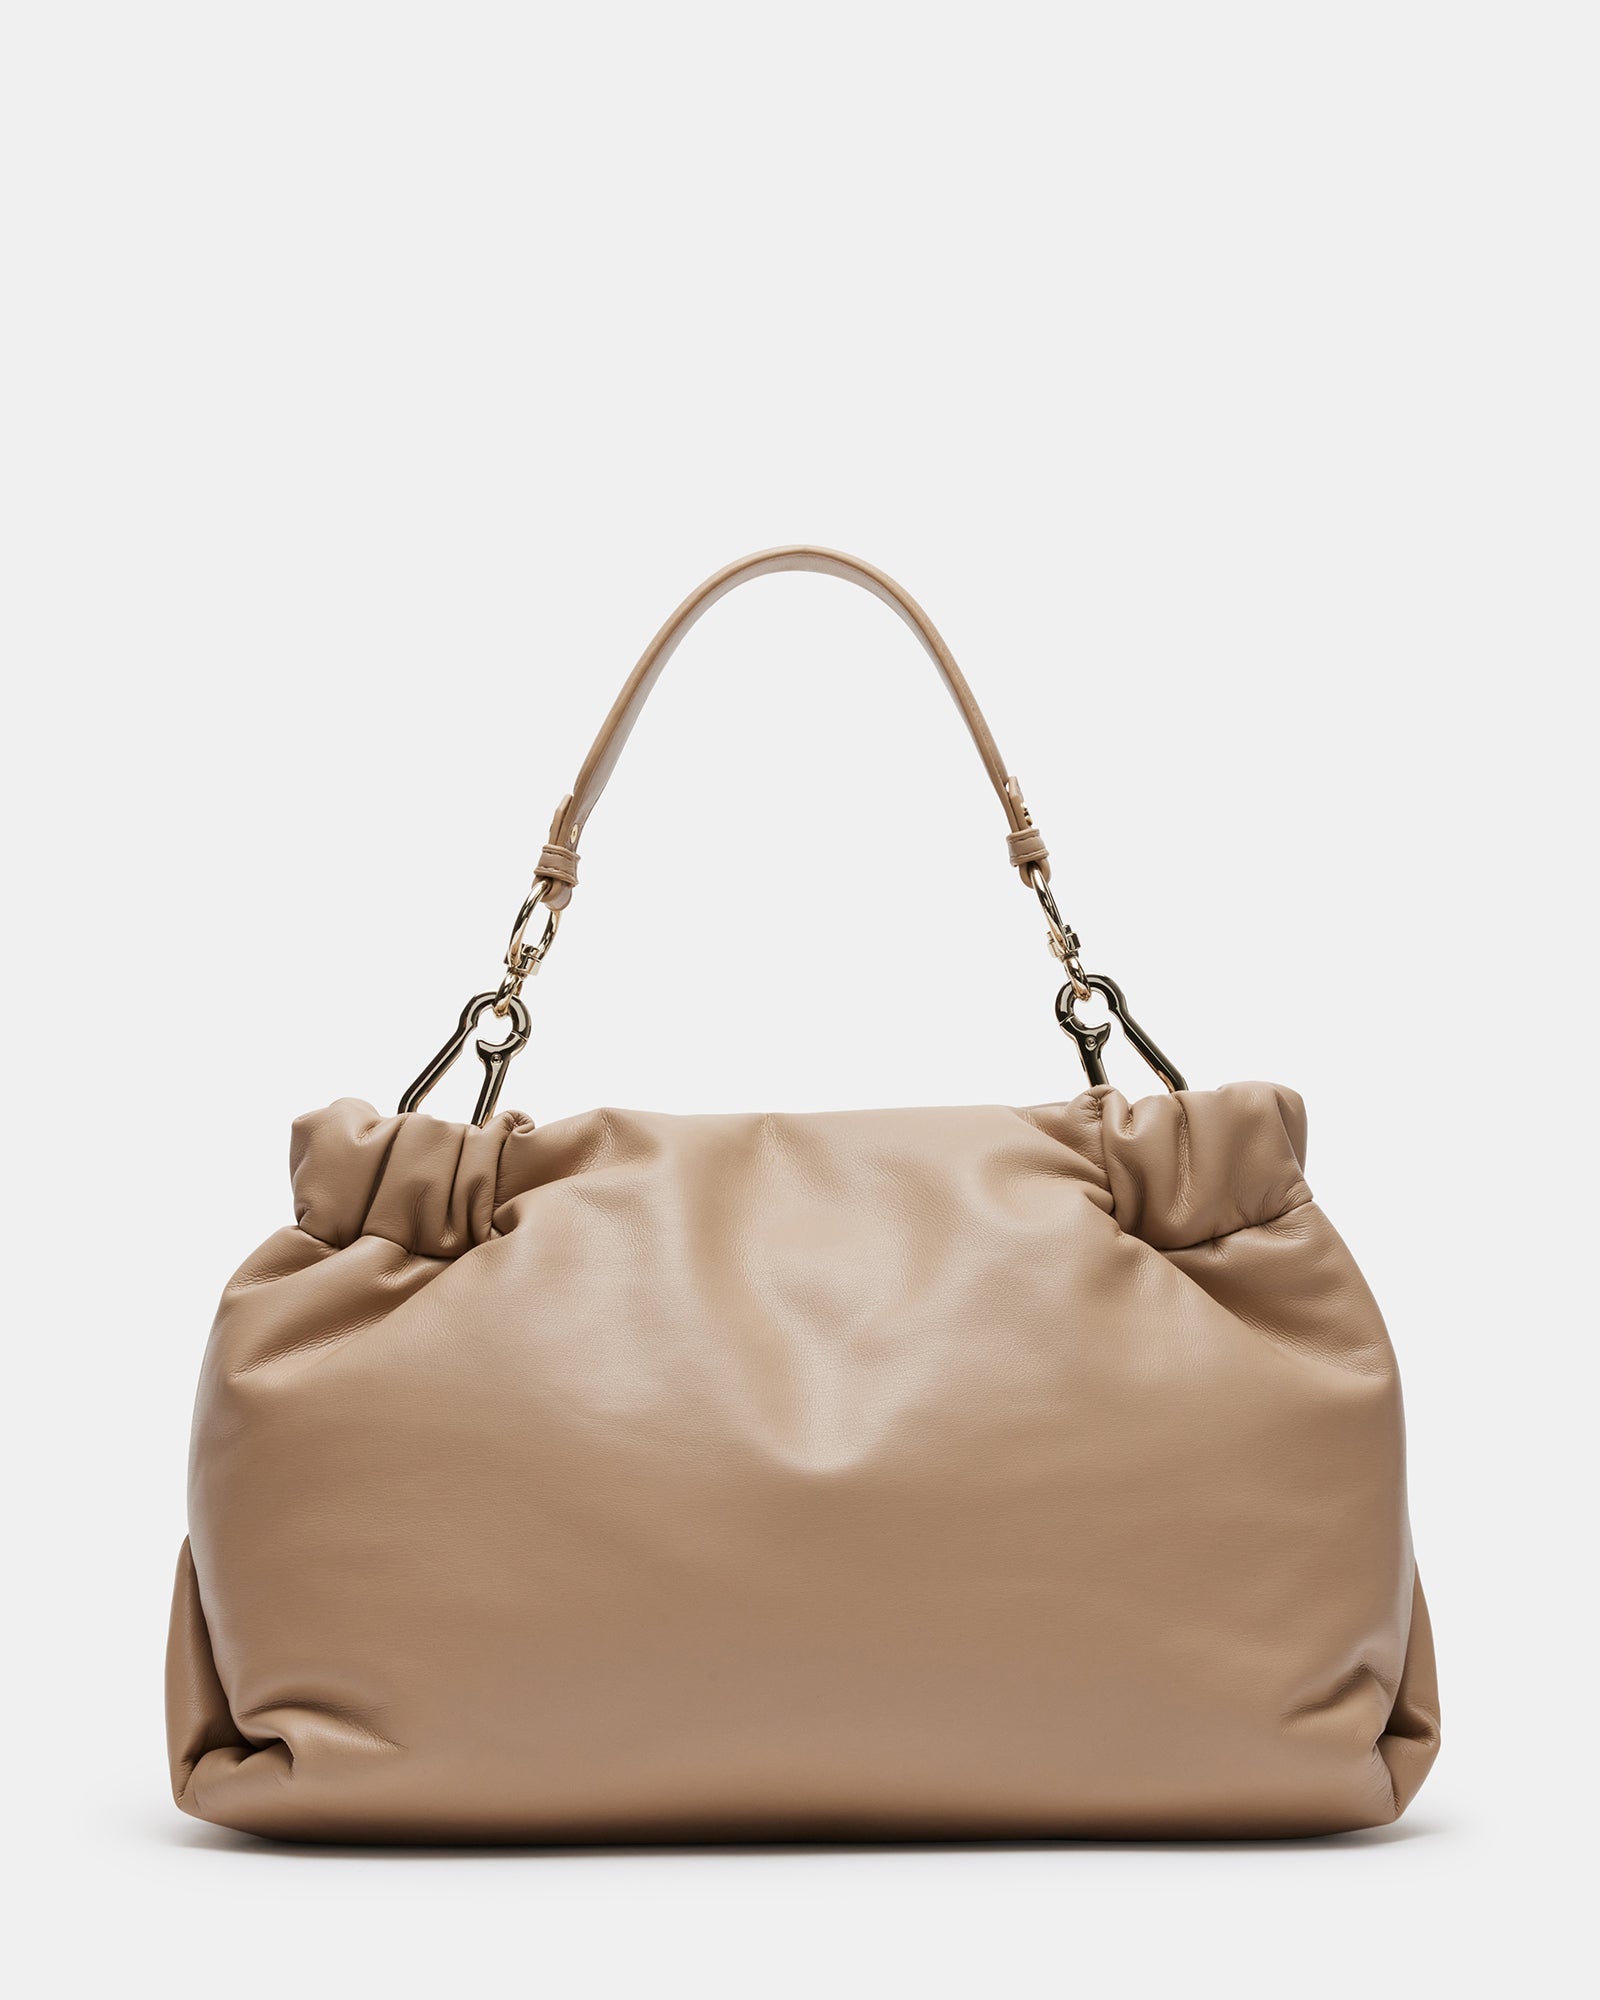 REMY Bag Tan | Women's Shoulder Bag – Steve Madden